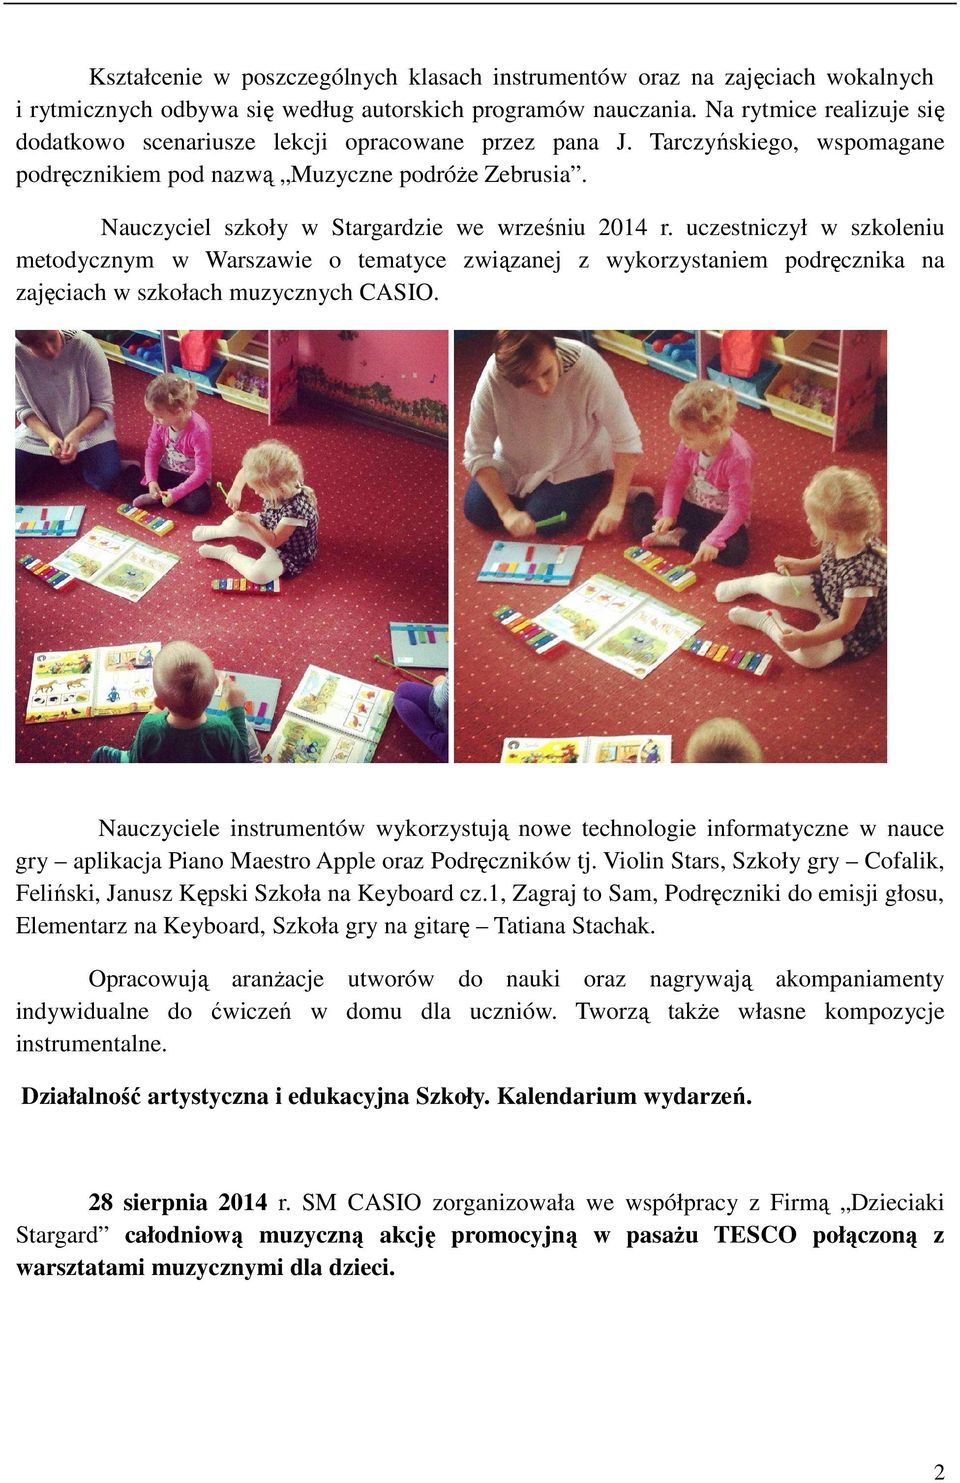 Nauczyciel szkoły w Stargardzie we wrześniu 2014 r. uczestniczył w szkoleniu metodycznym w Warszawie o tematyce związanej z wykorzystaniem podręcznika na zajęciach w szkołach muzycznych CASIO.